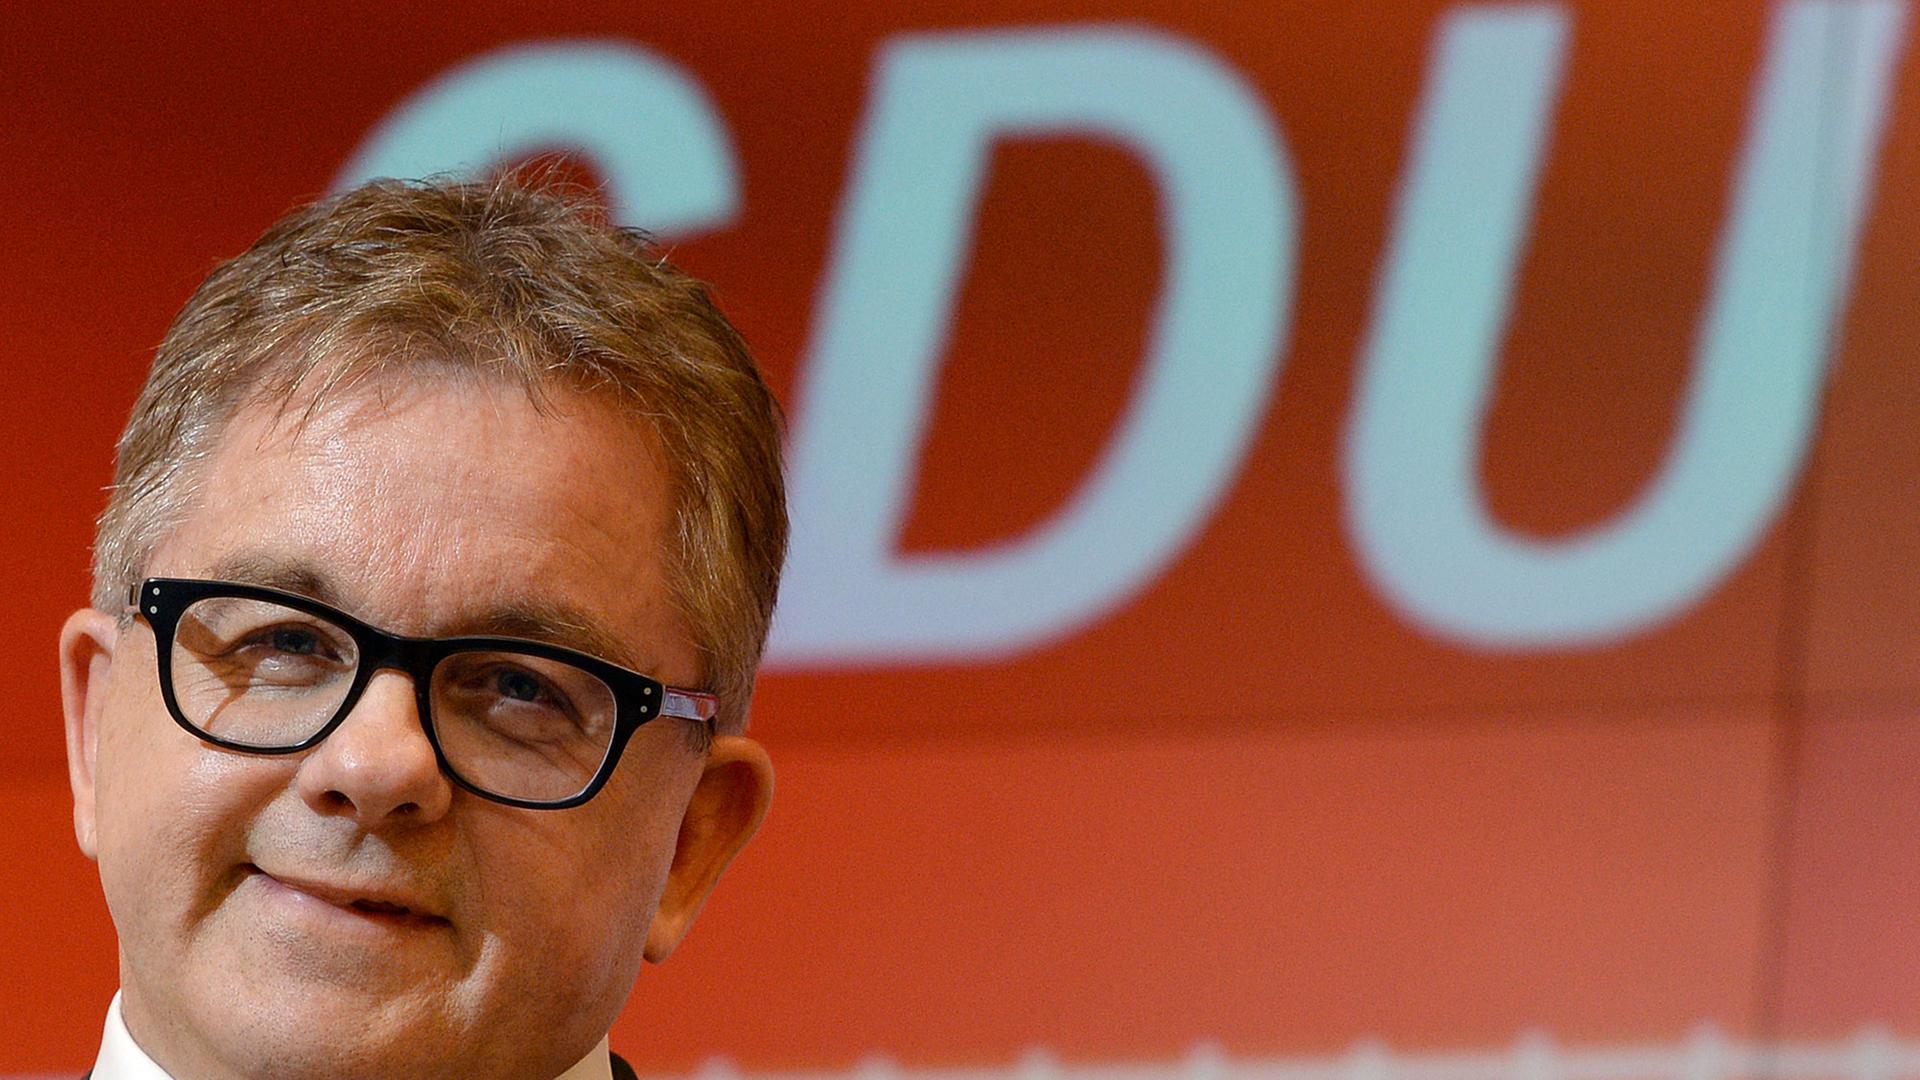 Der CDU-Politiker Guido Wolf bei der Bekanntgabe des Ergebnisses der CDU-Mitgliederbefragung für die Spitzenkandidatur 2016 in Baden-Württemberg.